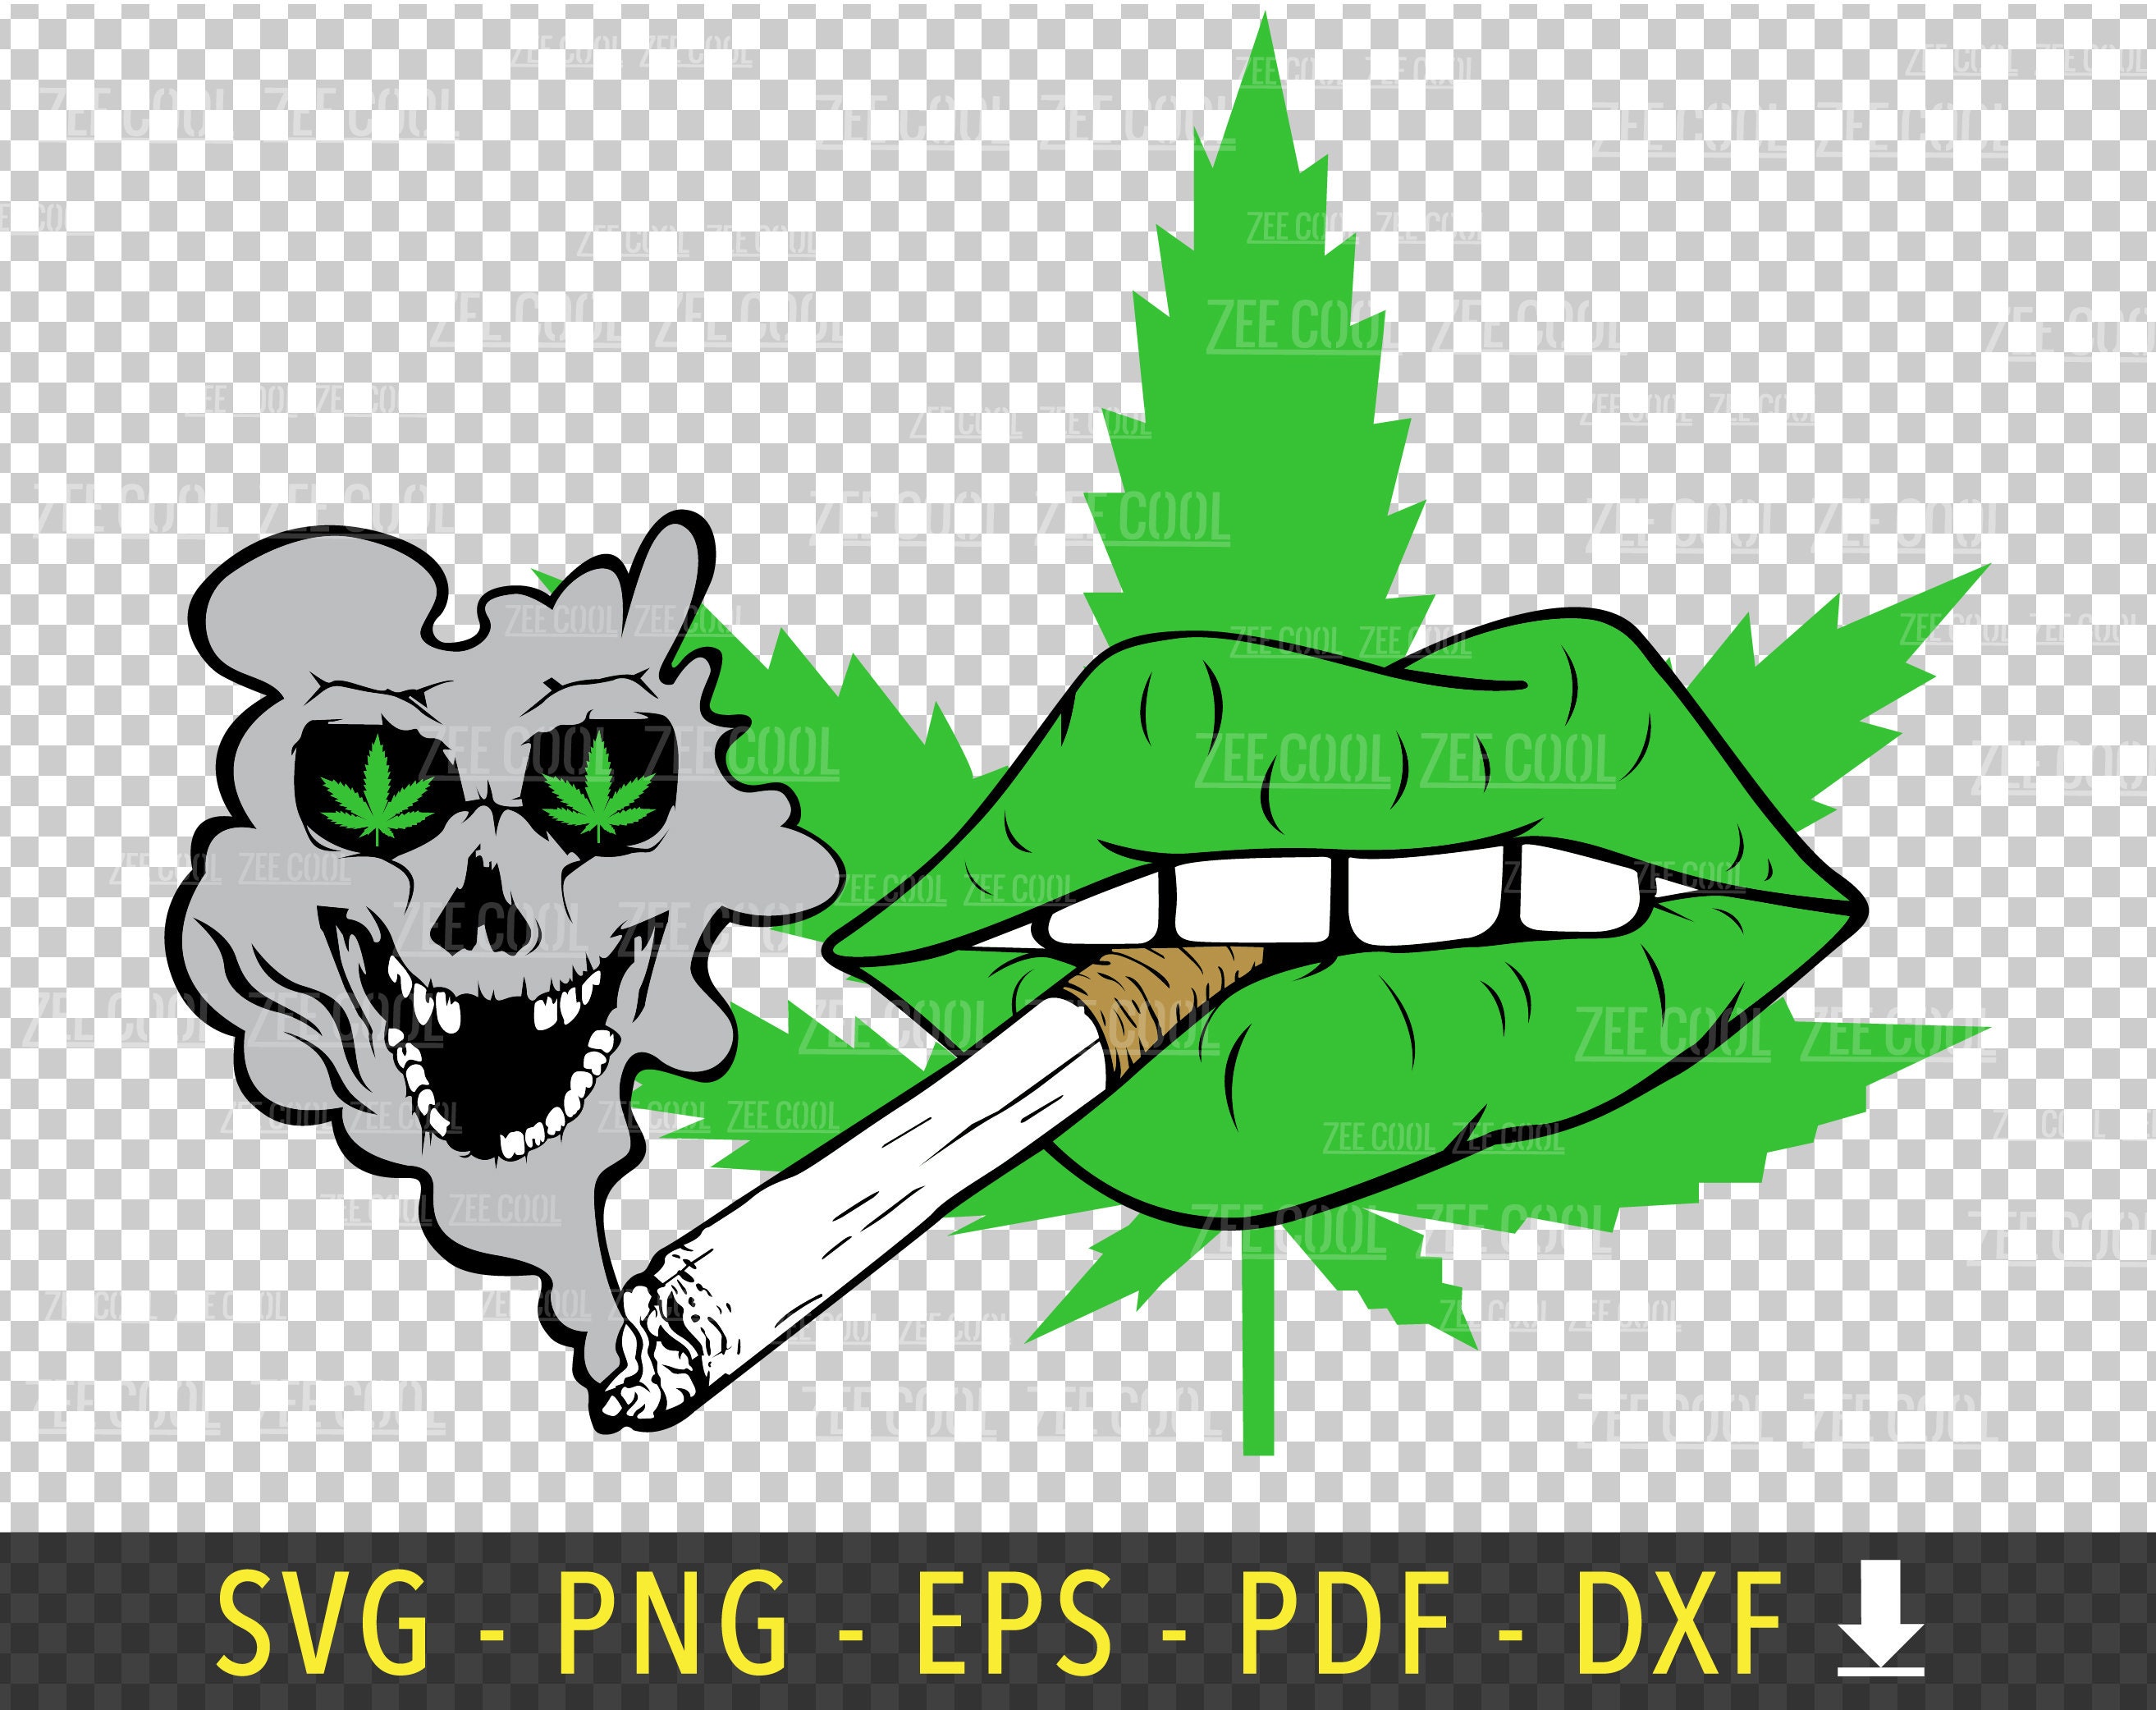 Weed Smoke SVG